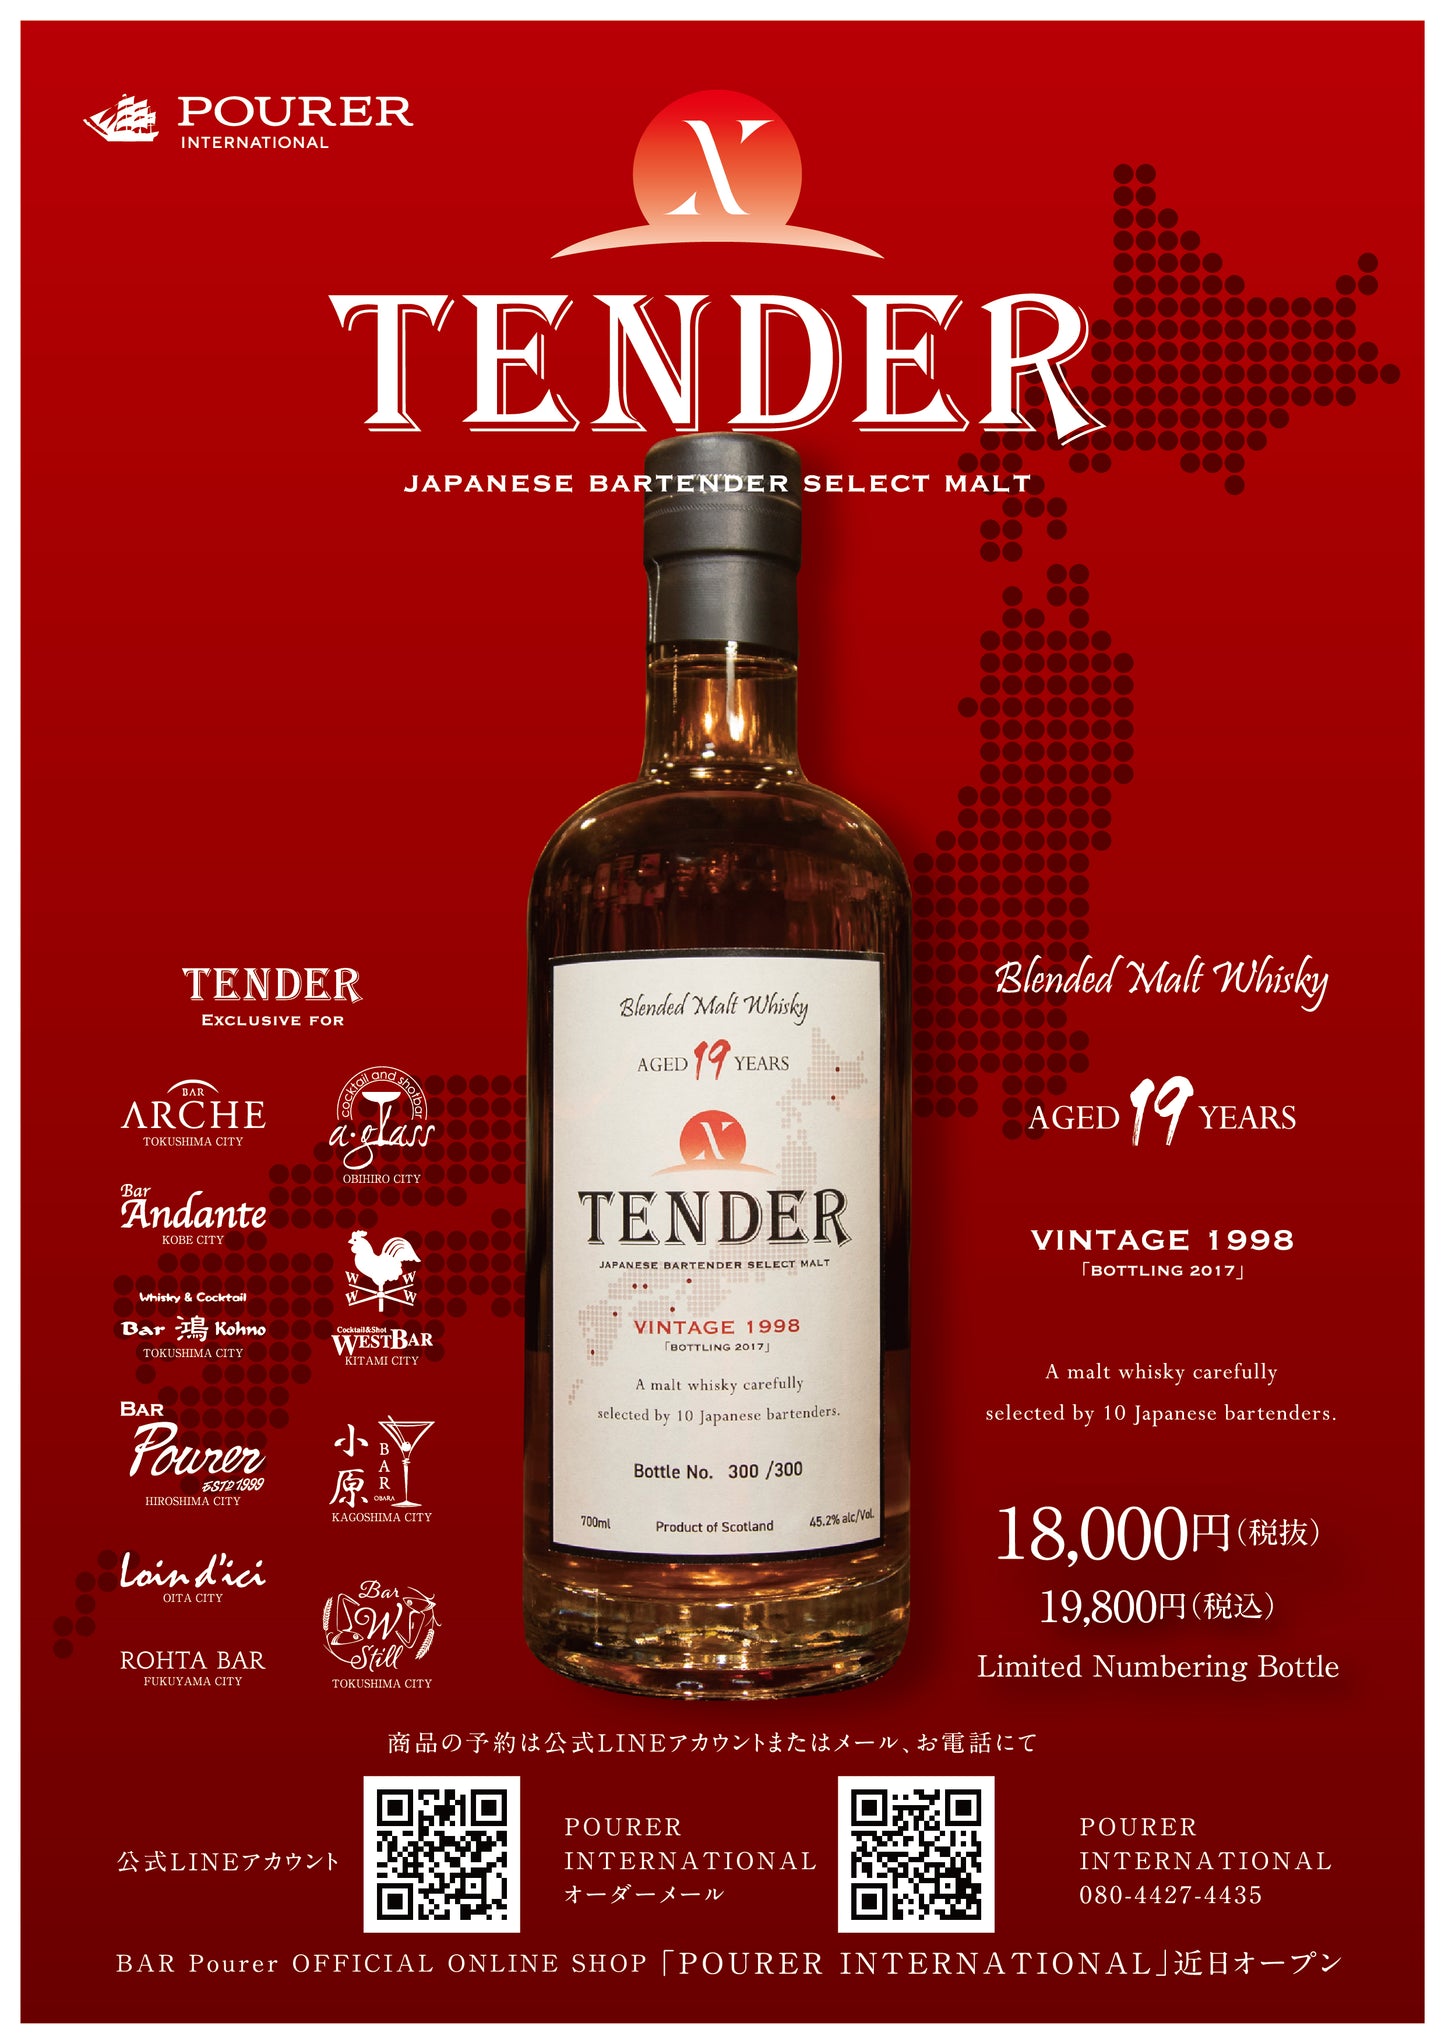 Blended Malt Whisky 「TENDER」